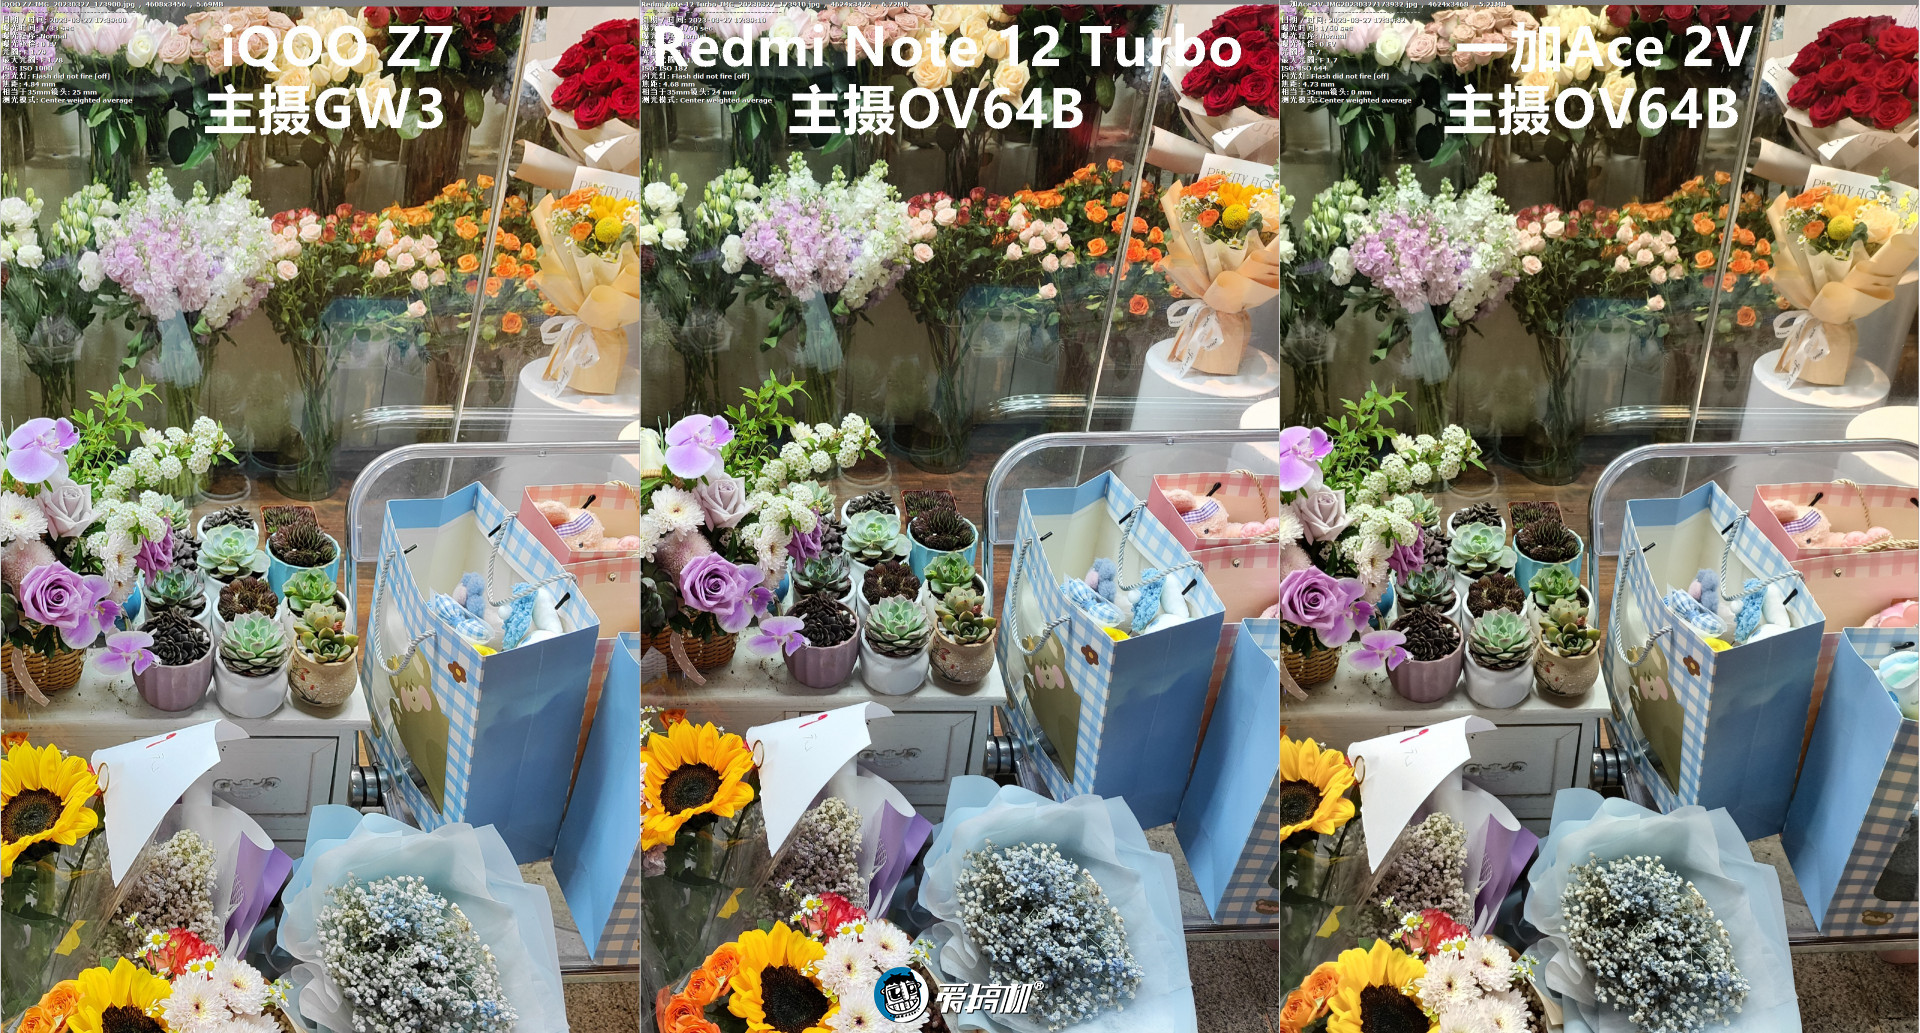 6400万像素大战，Redmi Note 12 Turbo、一加Ace 2V 、iQOO Z7拍照对比